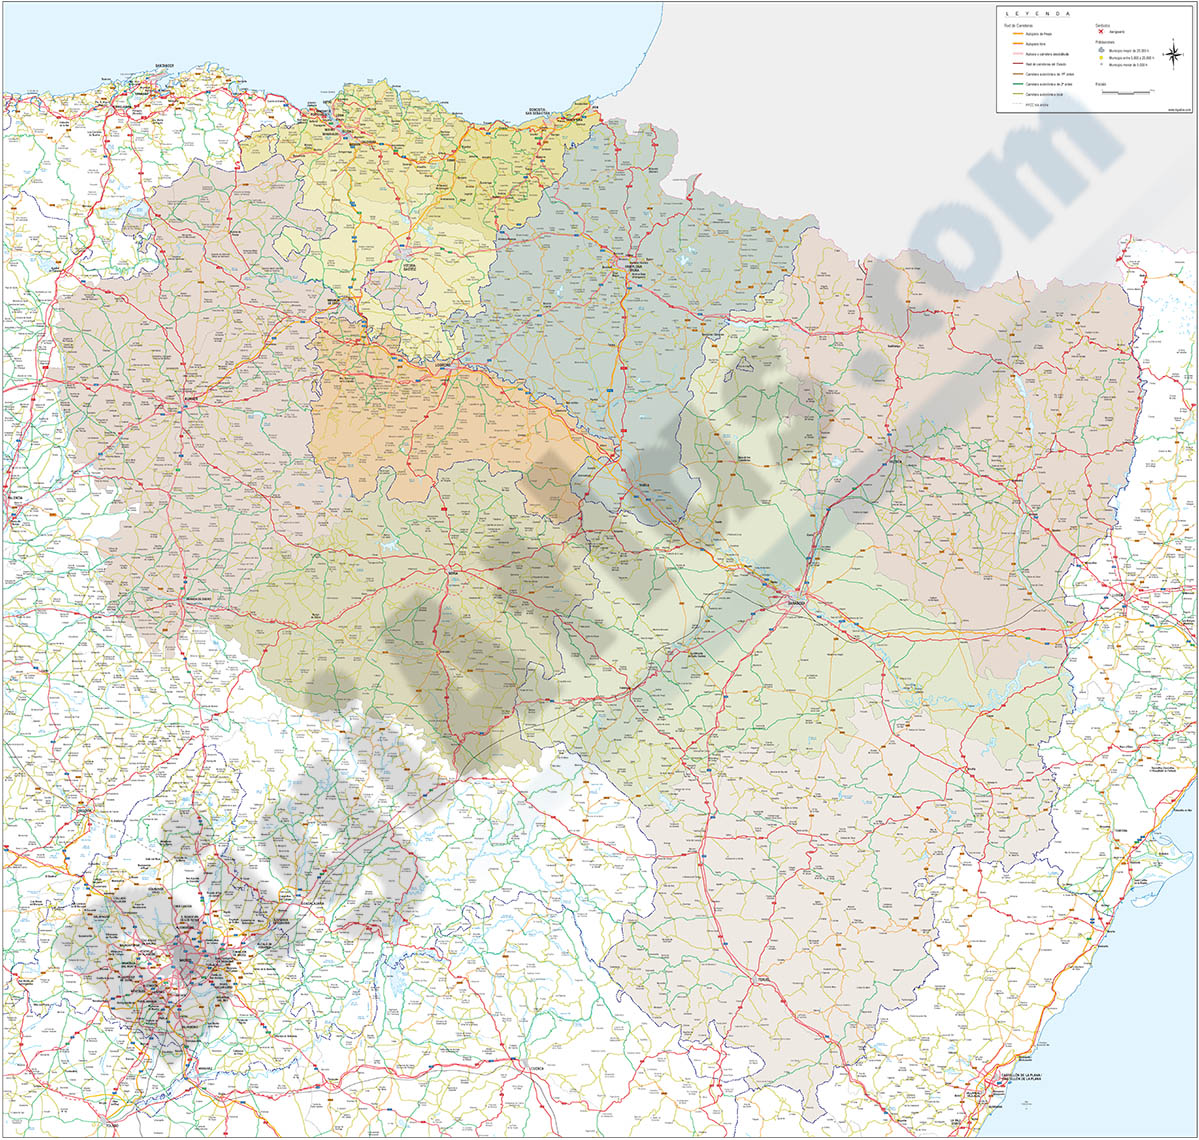 Mapa del Pais Vasco, Navarra, La Rioja, Burgos, Soria y Aragón